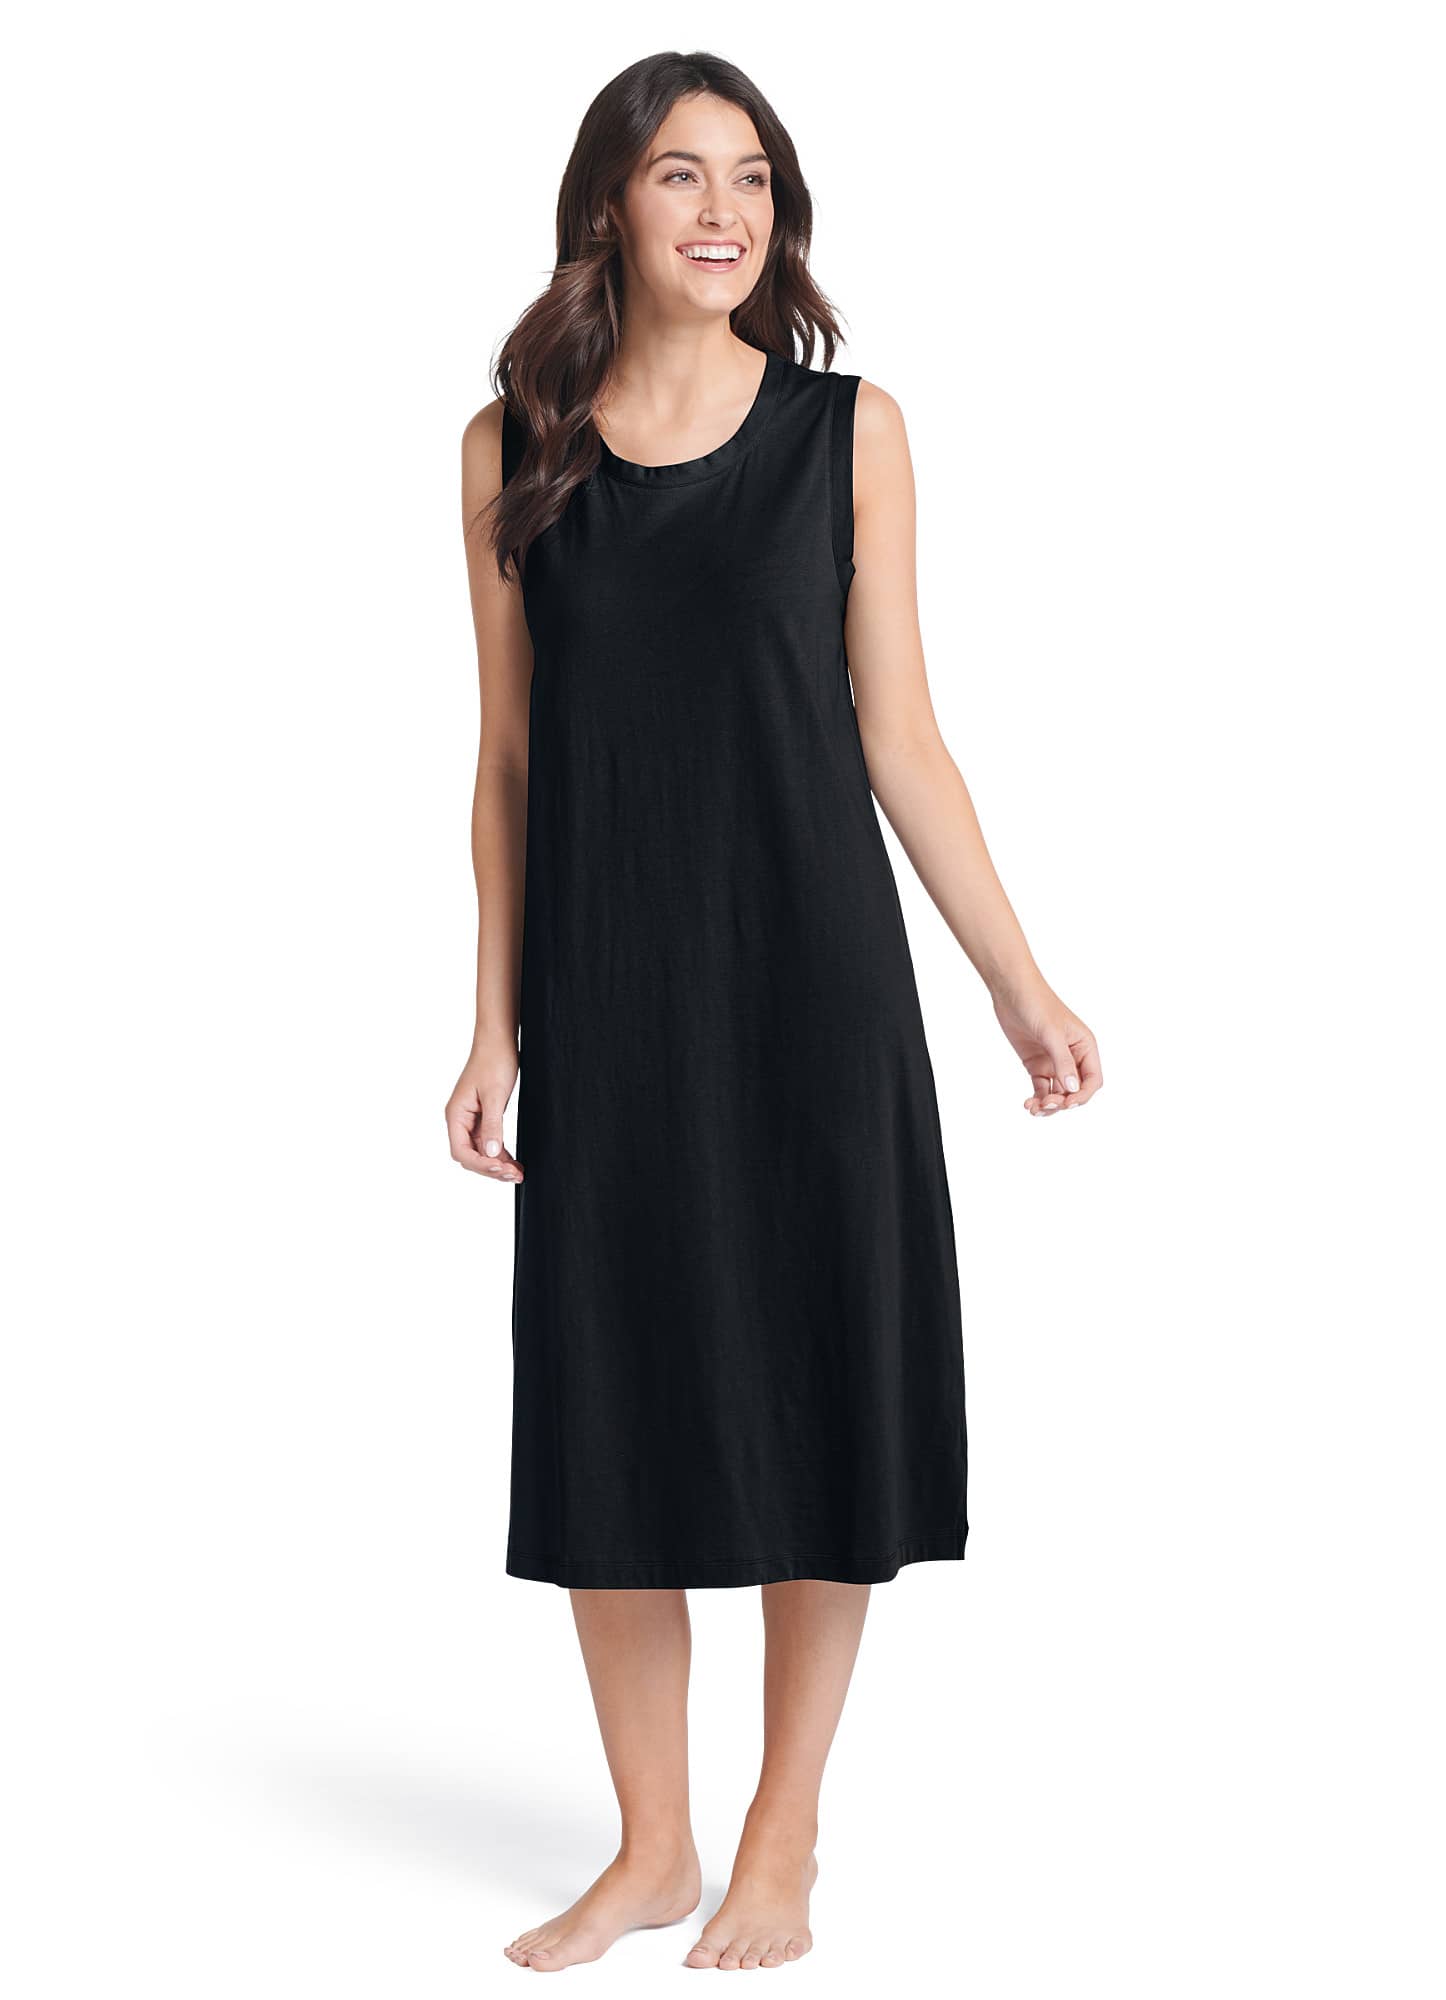 Women Cartoon Print Nightdress Sleepwear Dress Short Sleeve Nightwear Loose  Loungewear | Fruugo NO